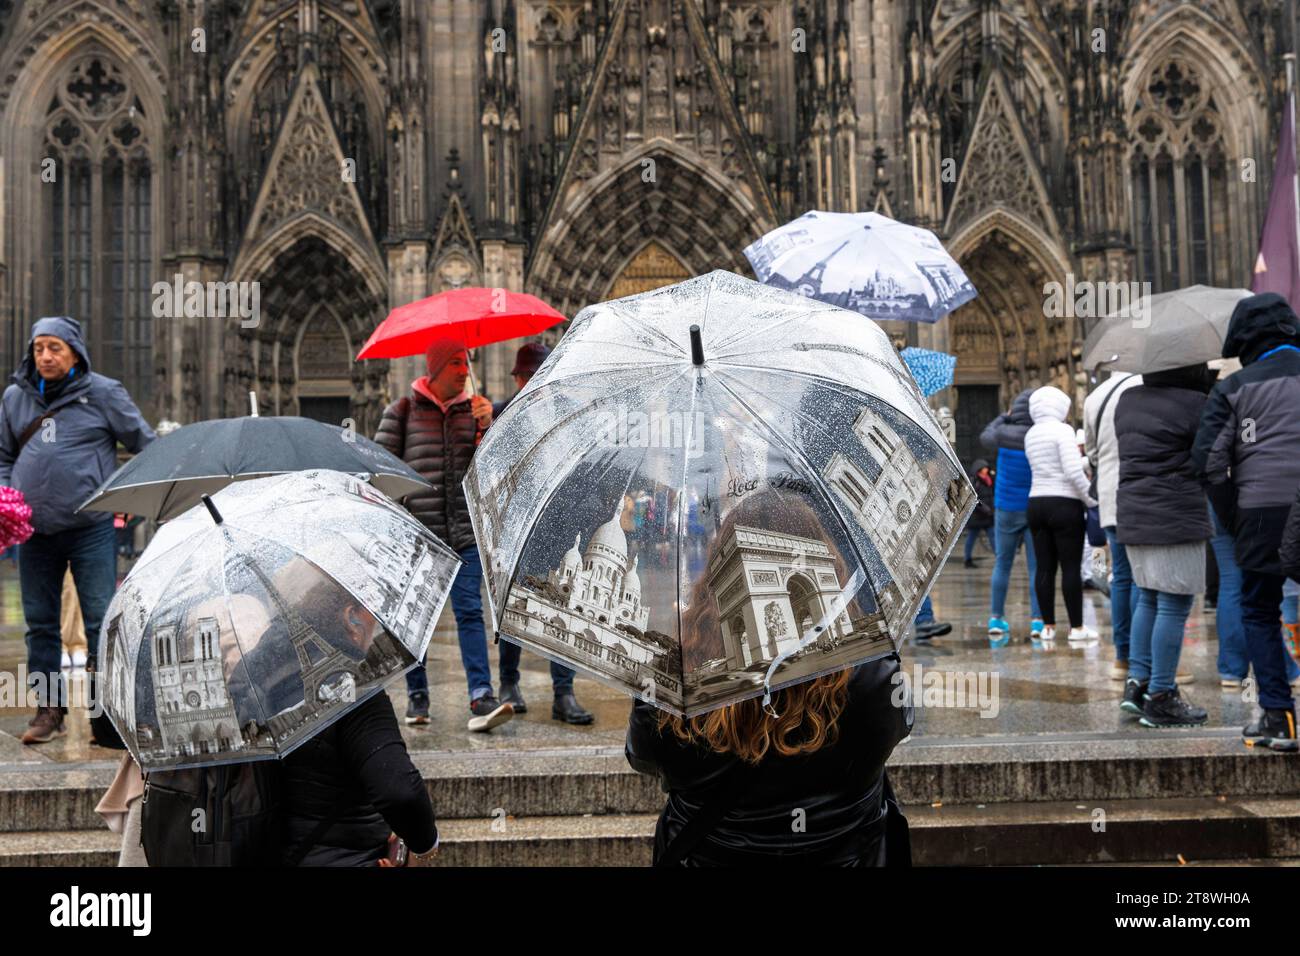 Touristen mit Sonnenschirmen im Pariser Stil vor dem Dom, Köln, Deutschland. Touristen mit Regenschirmen mit Paris Motiven stehen bei Regen vor d Stockfoto